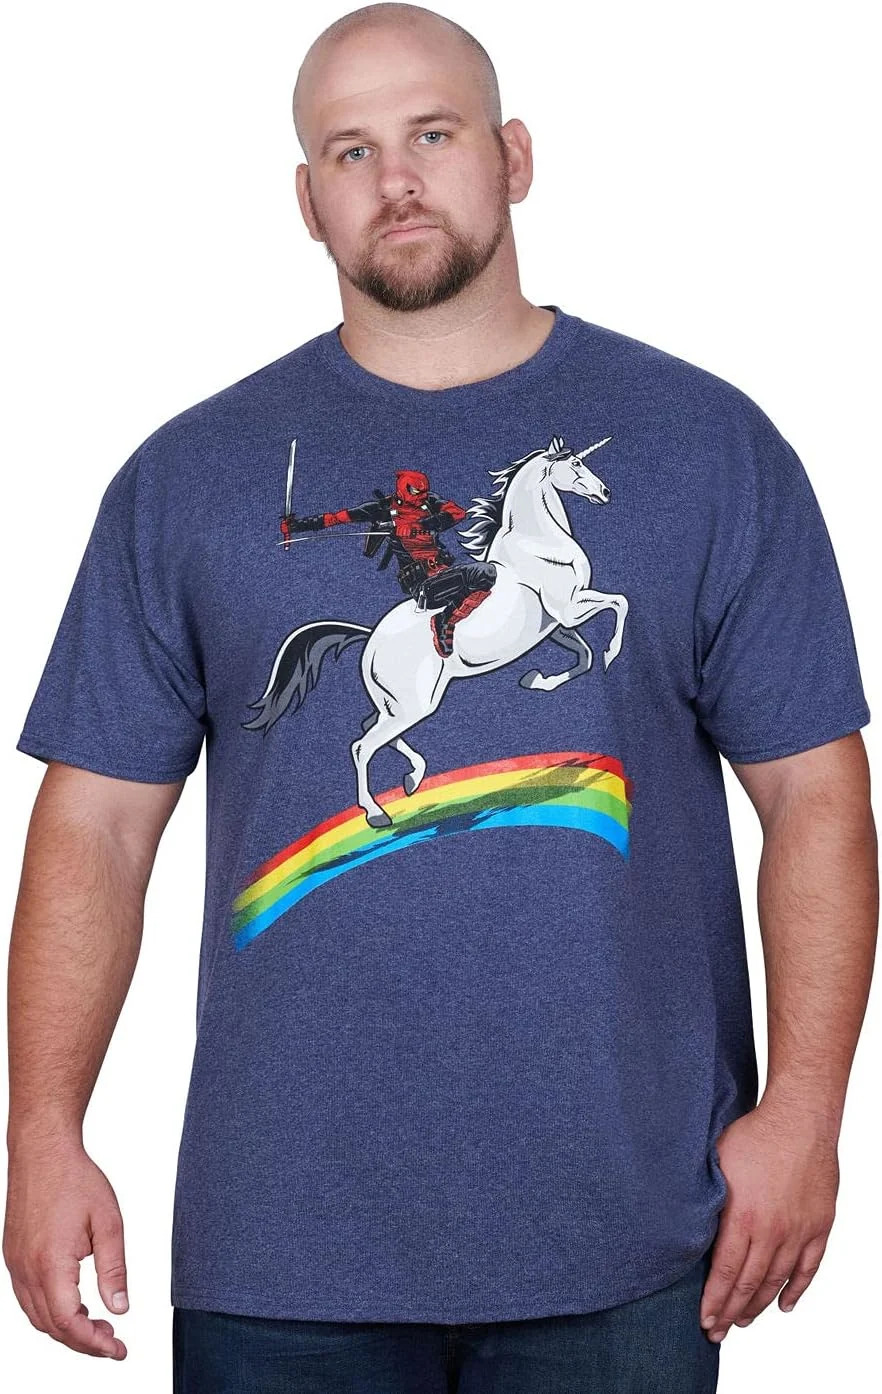 Marvel Deadpool Riding A Unicorn On A Rainbow T-Shirt